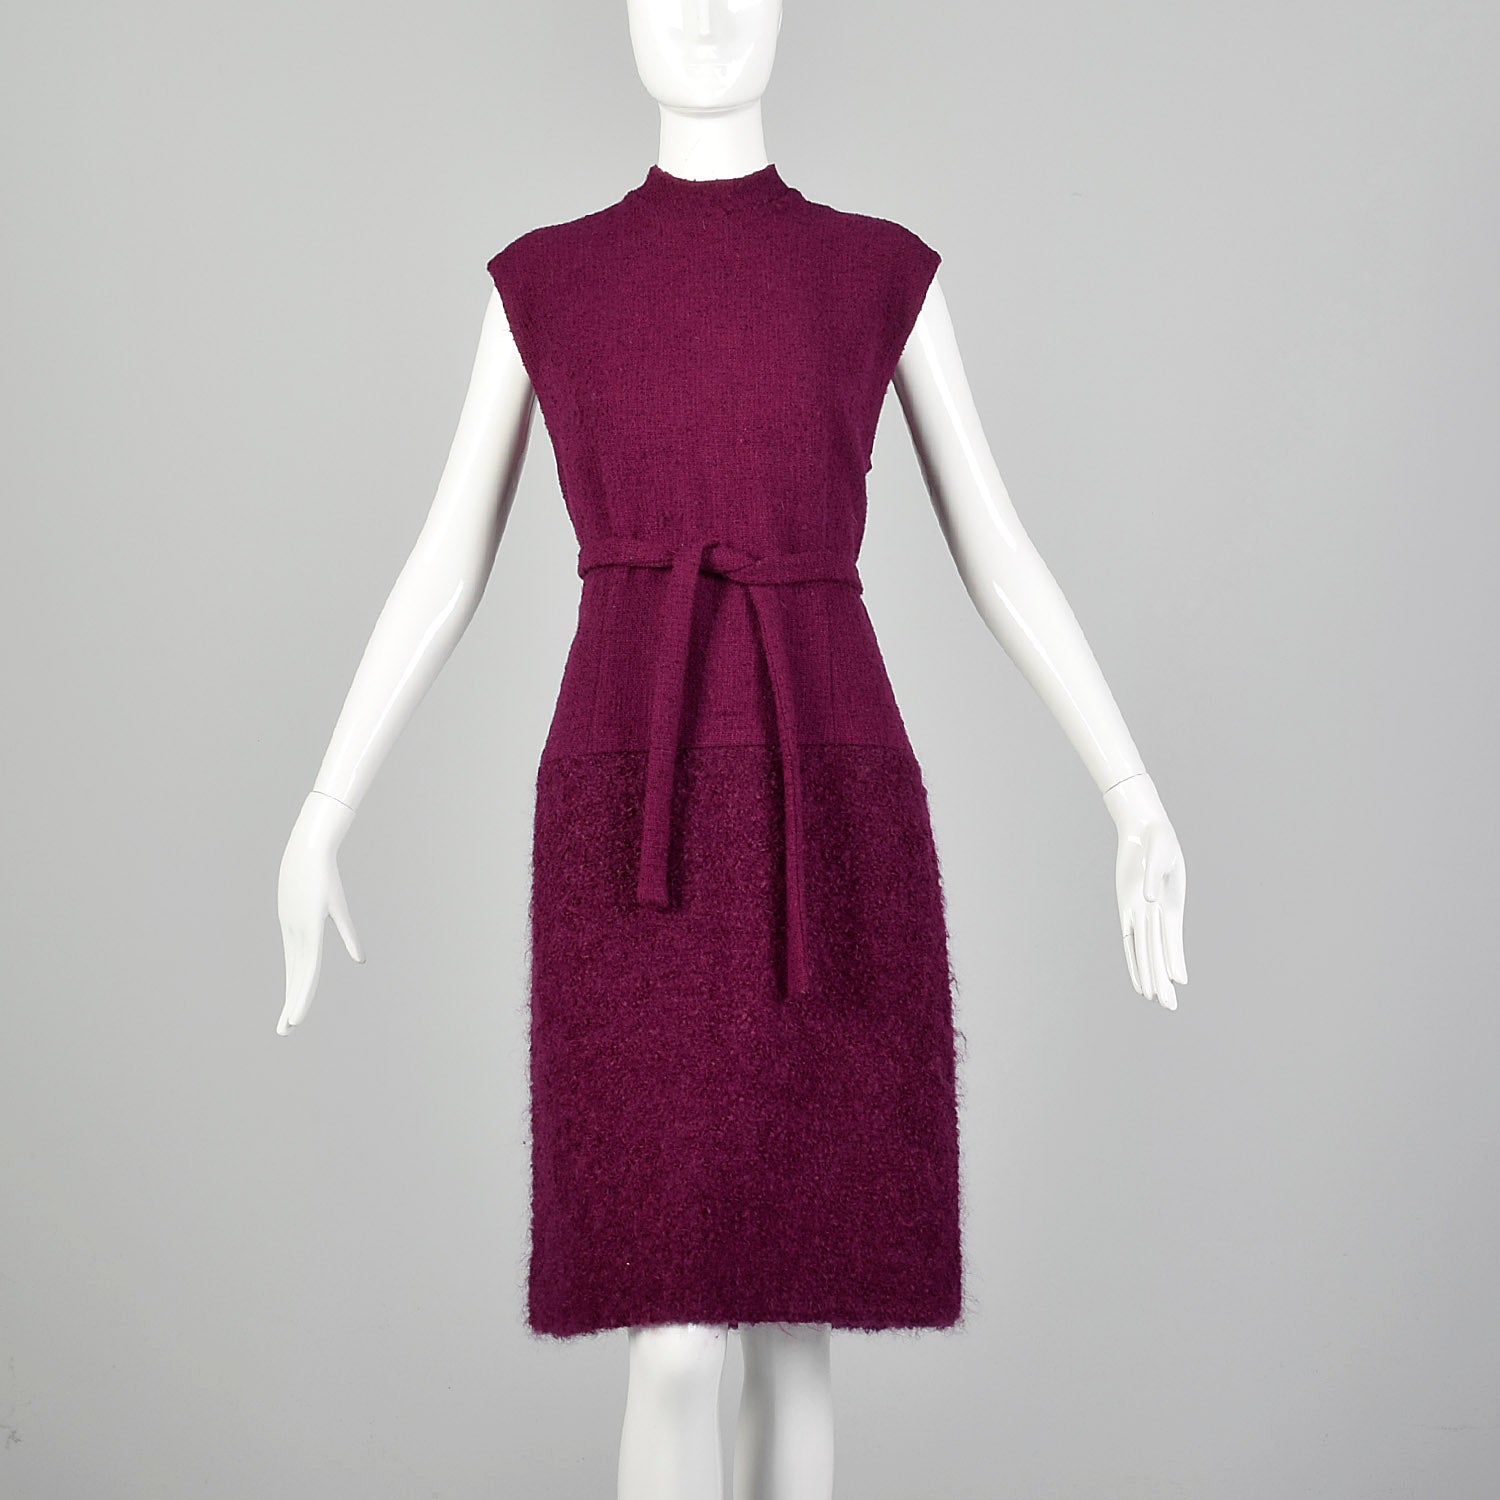 Large 1960s Fuchsia Coat and Dress Set